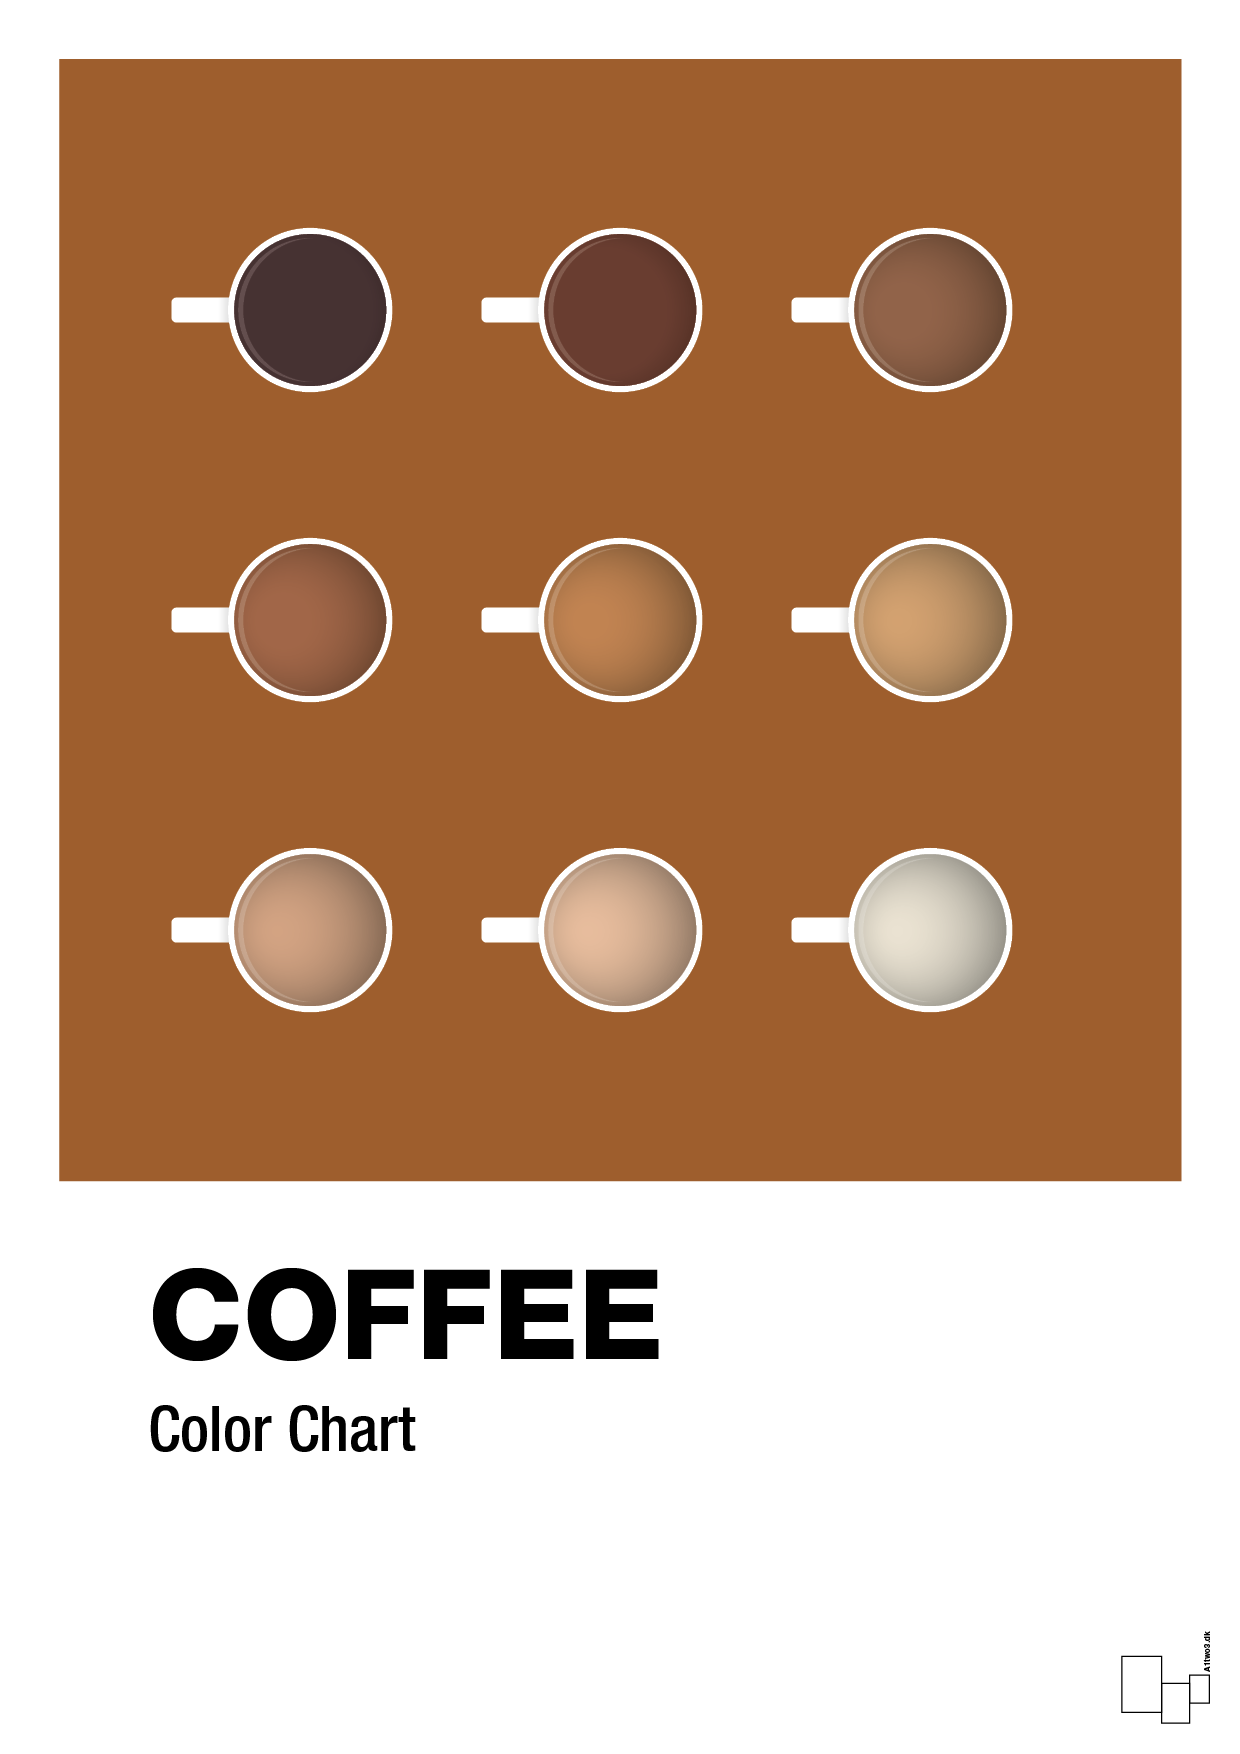 coffee color chart - Plakat med Mad & Drikke i Cognac